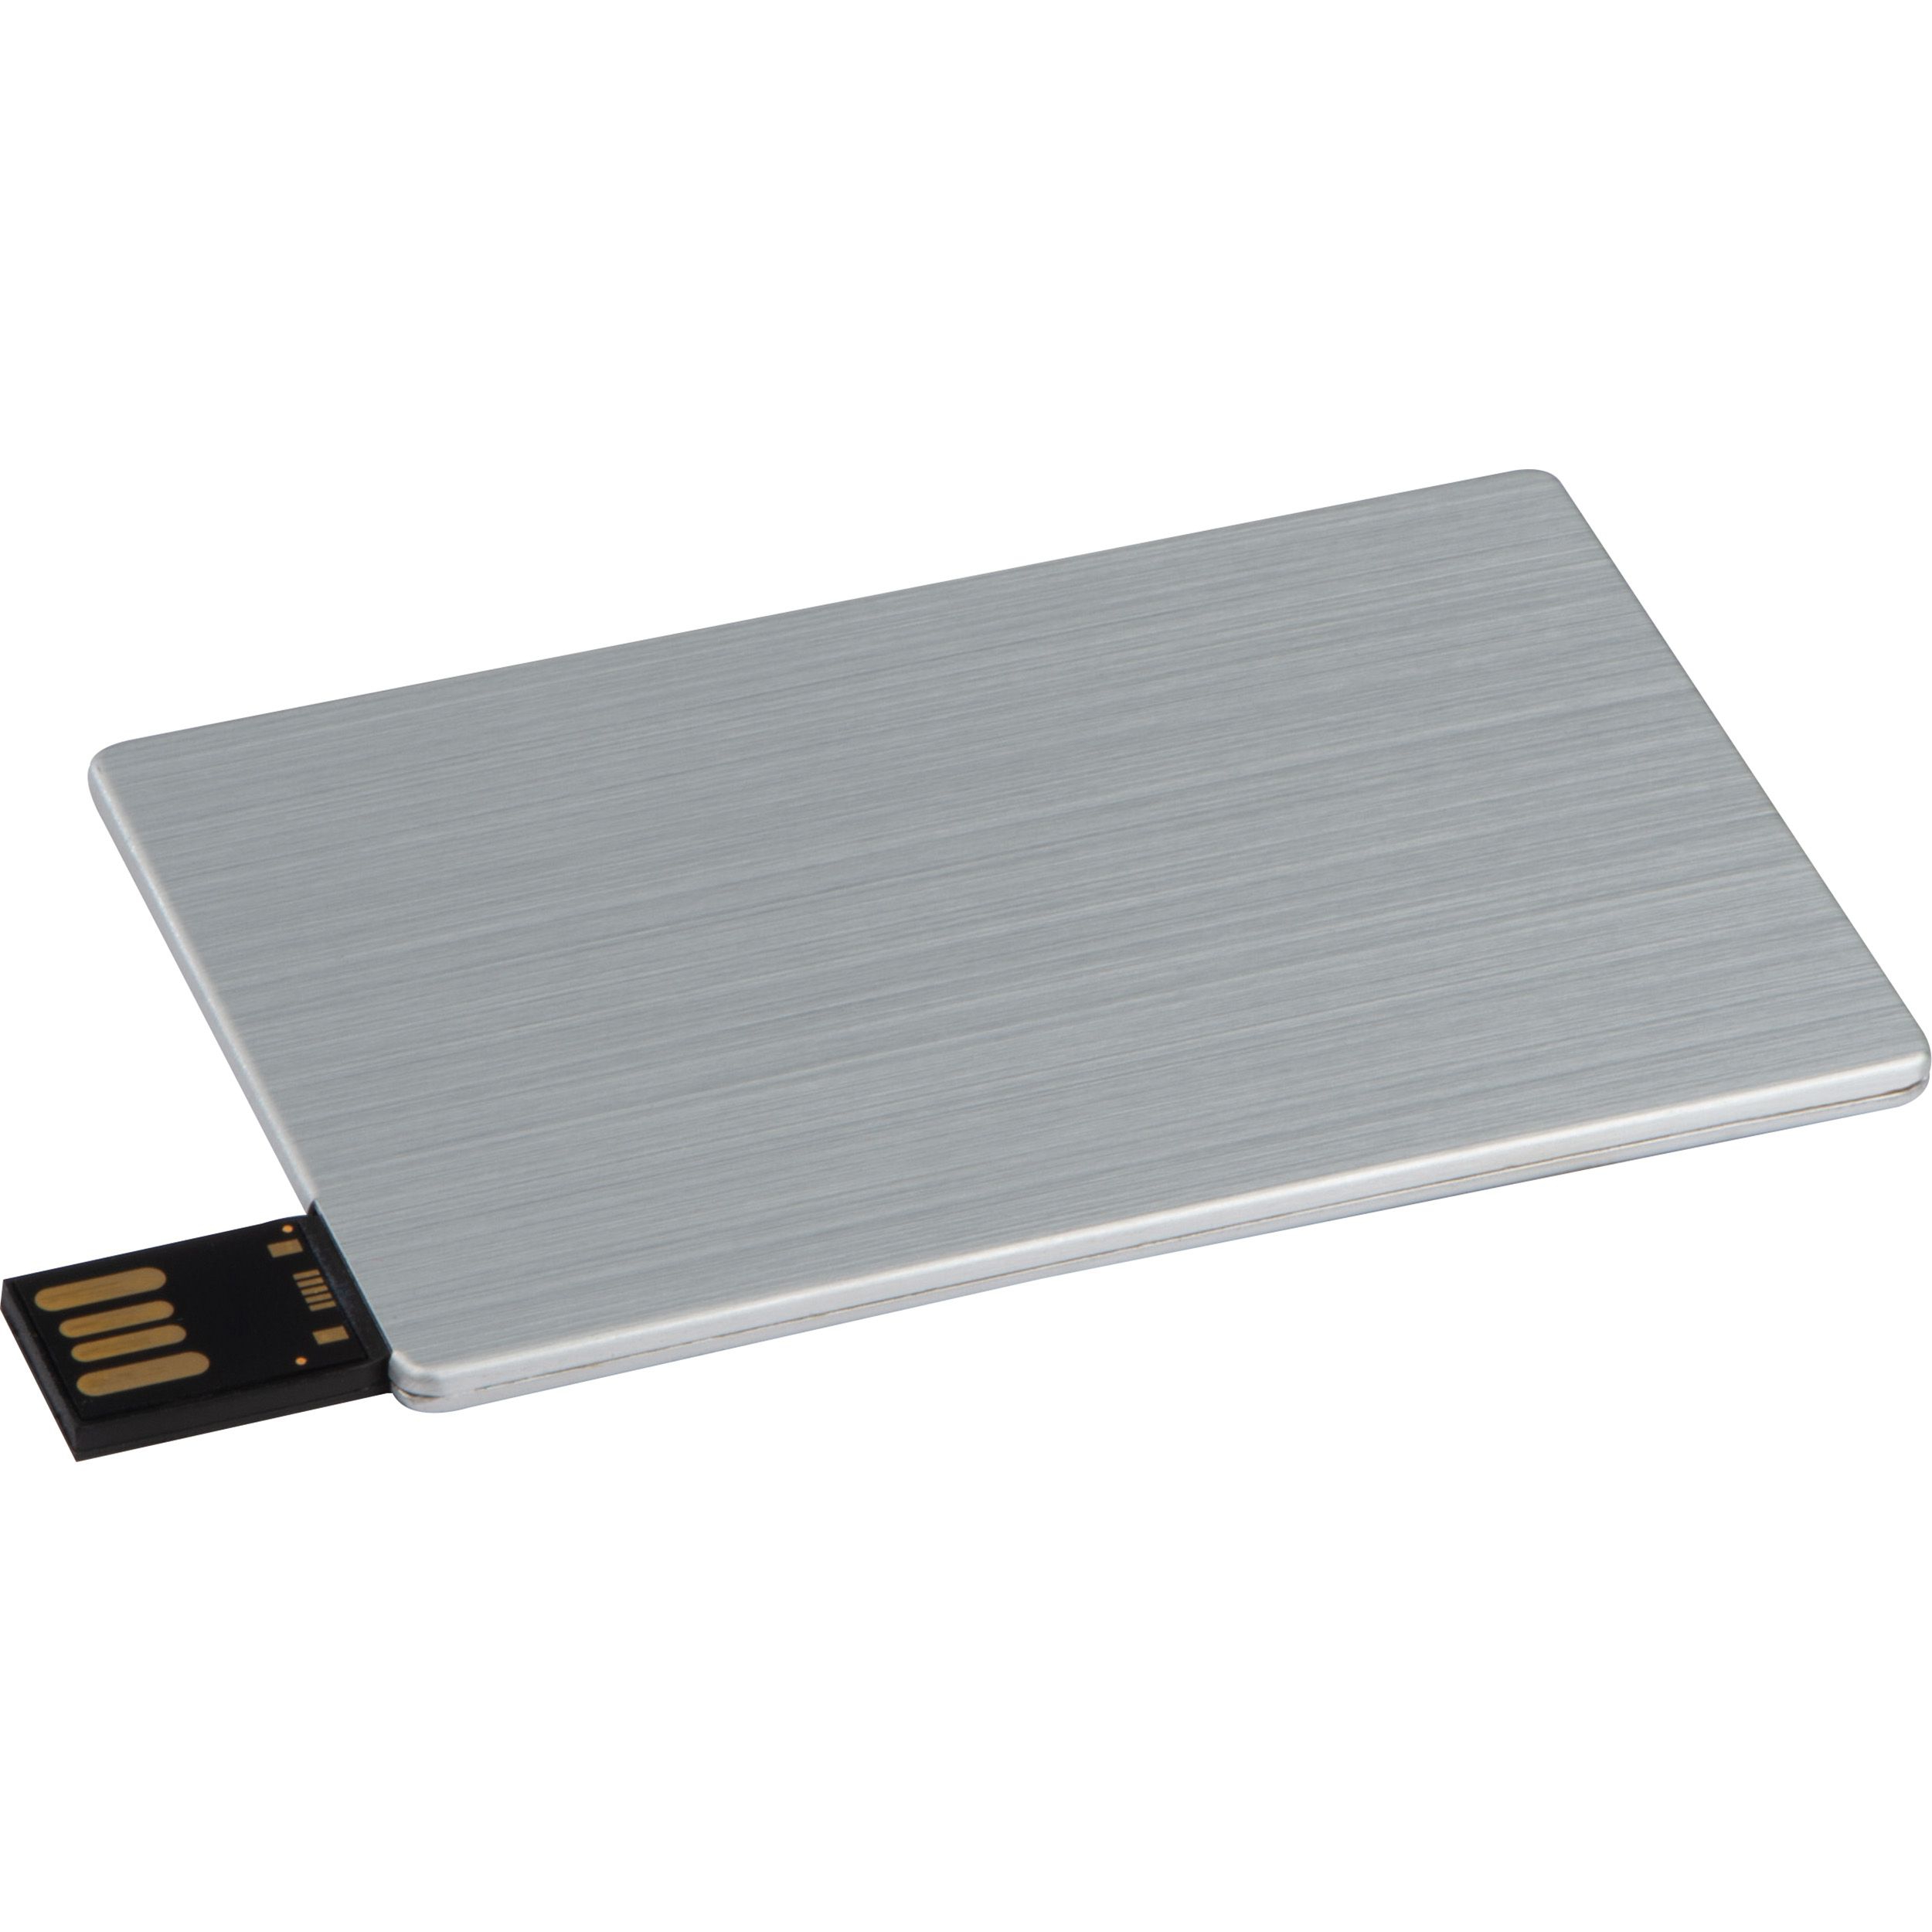 USB Karte aus Metall 4GB, silbergrau